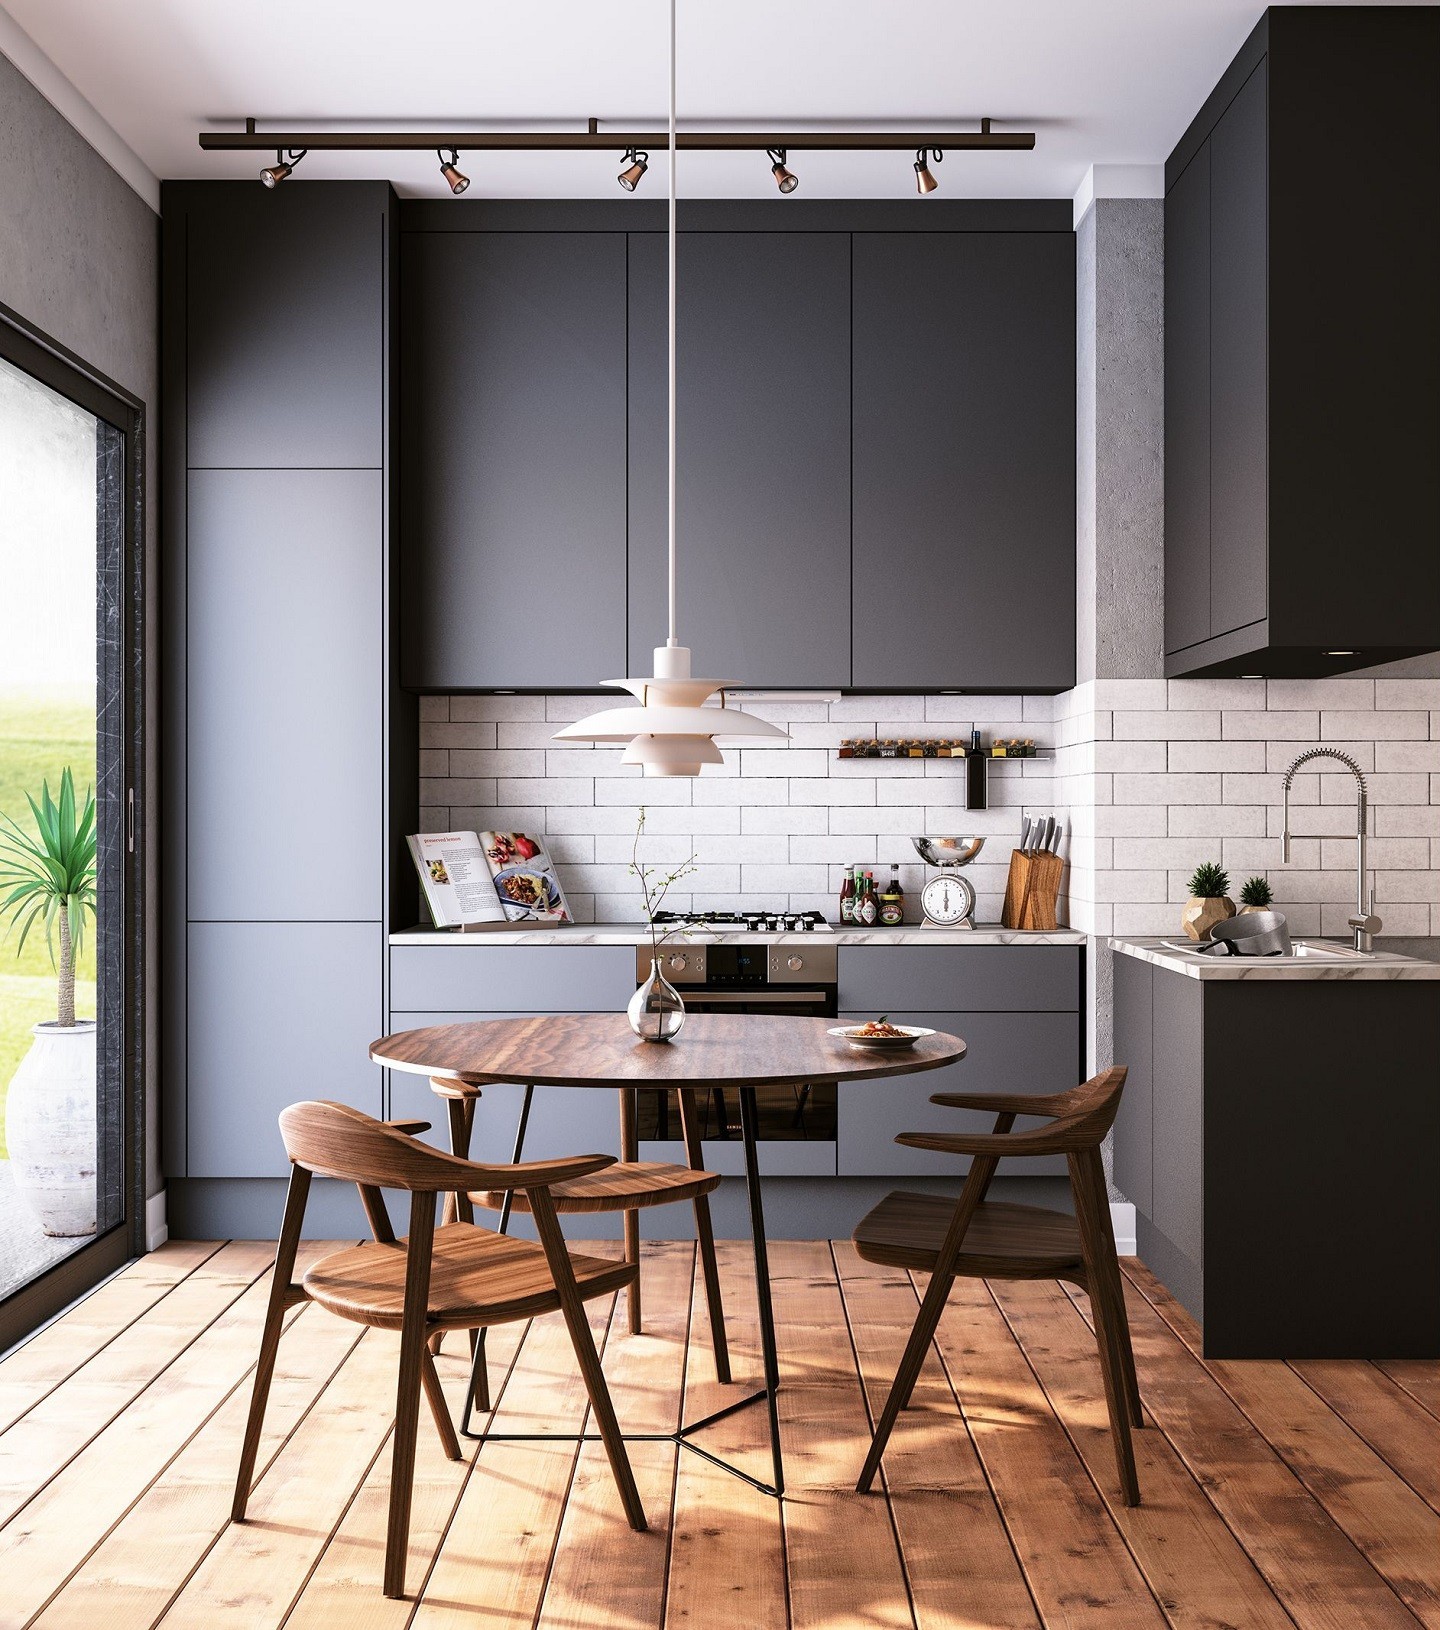 Cozinha aberta: 25 ambientes integrados e cheios de boas ideias (Foto: divulgação)